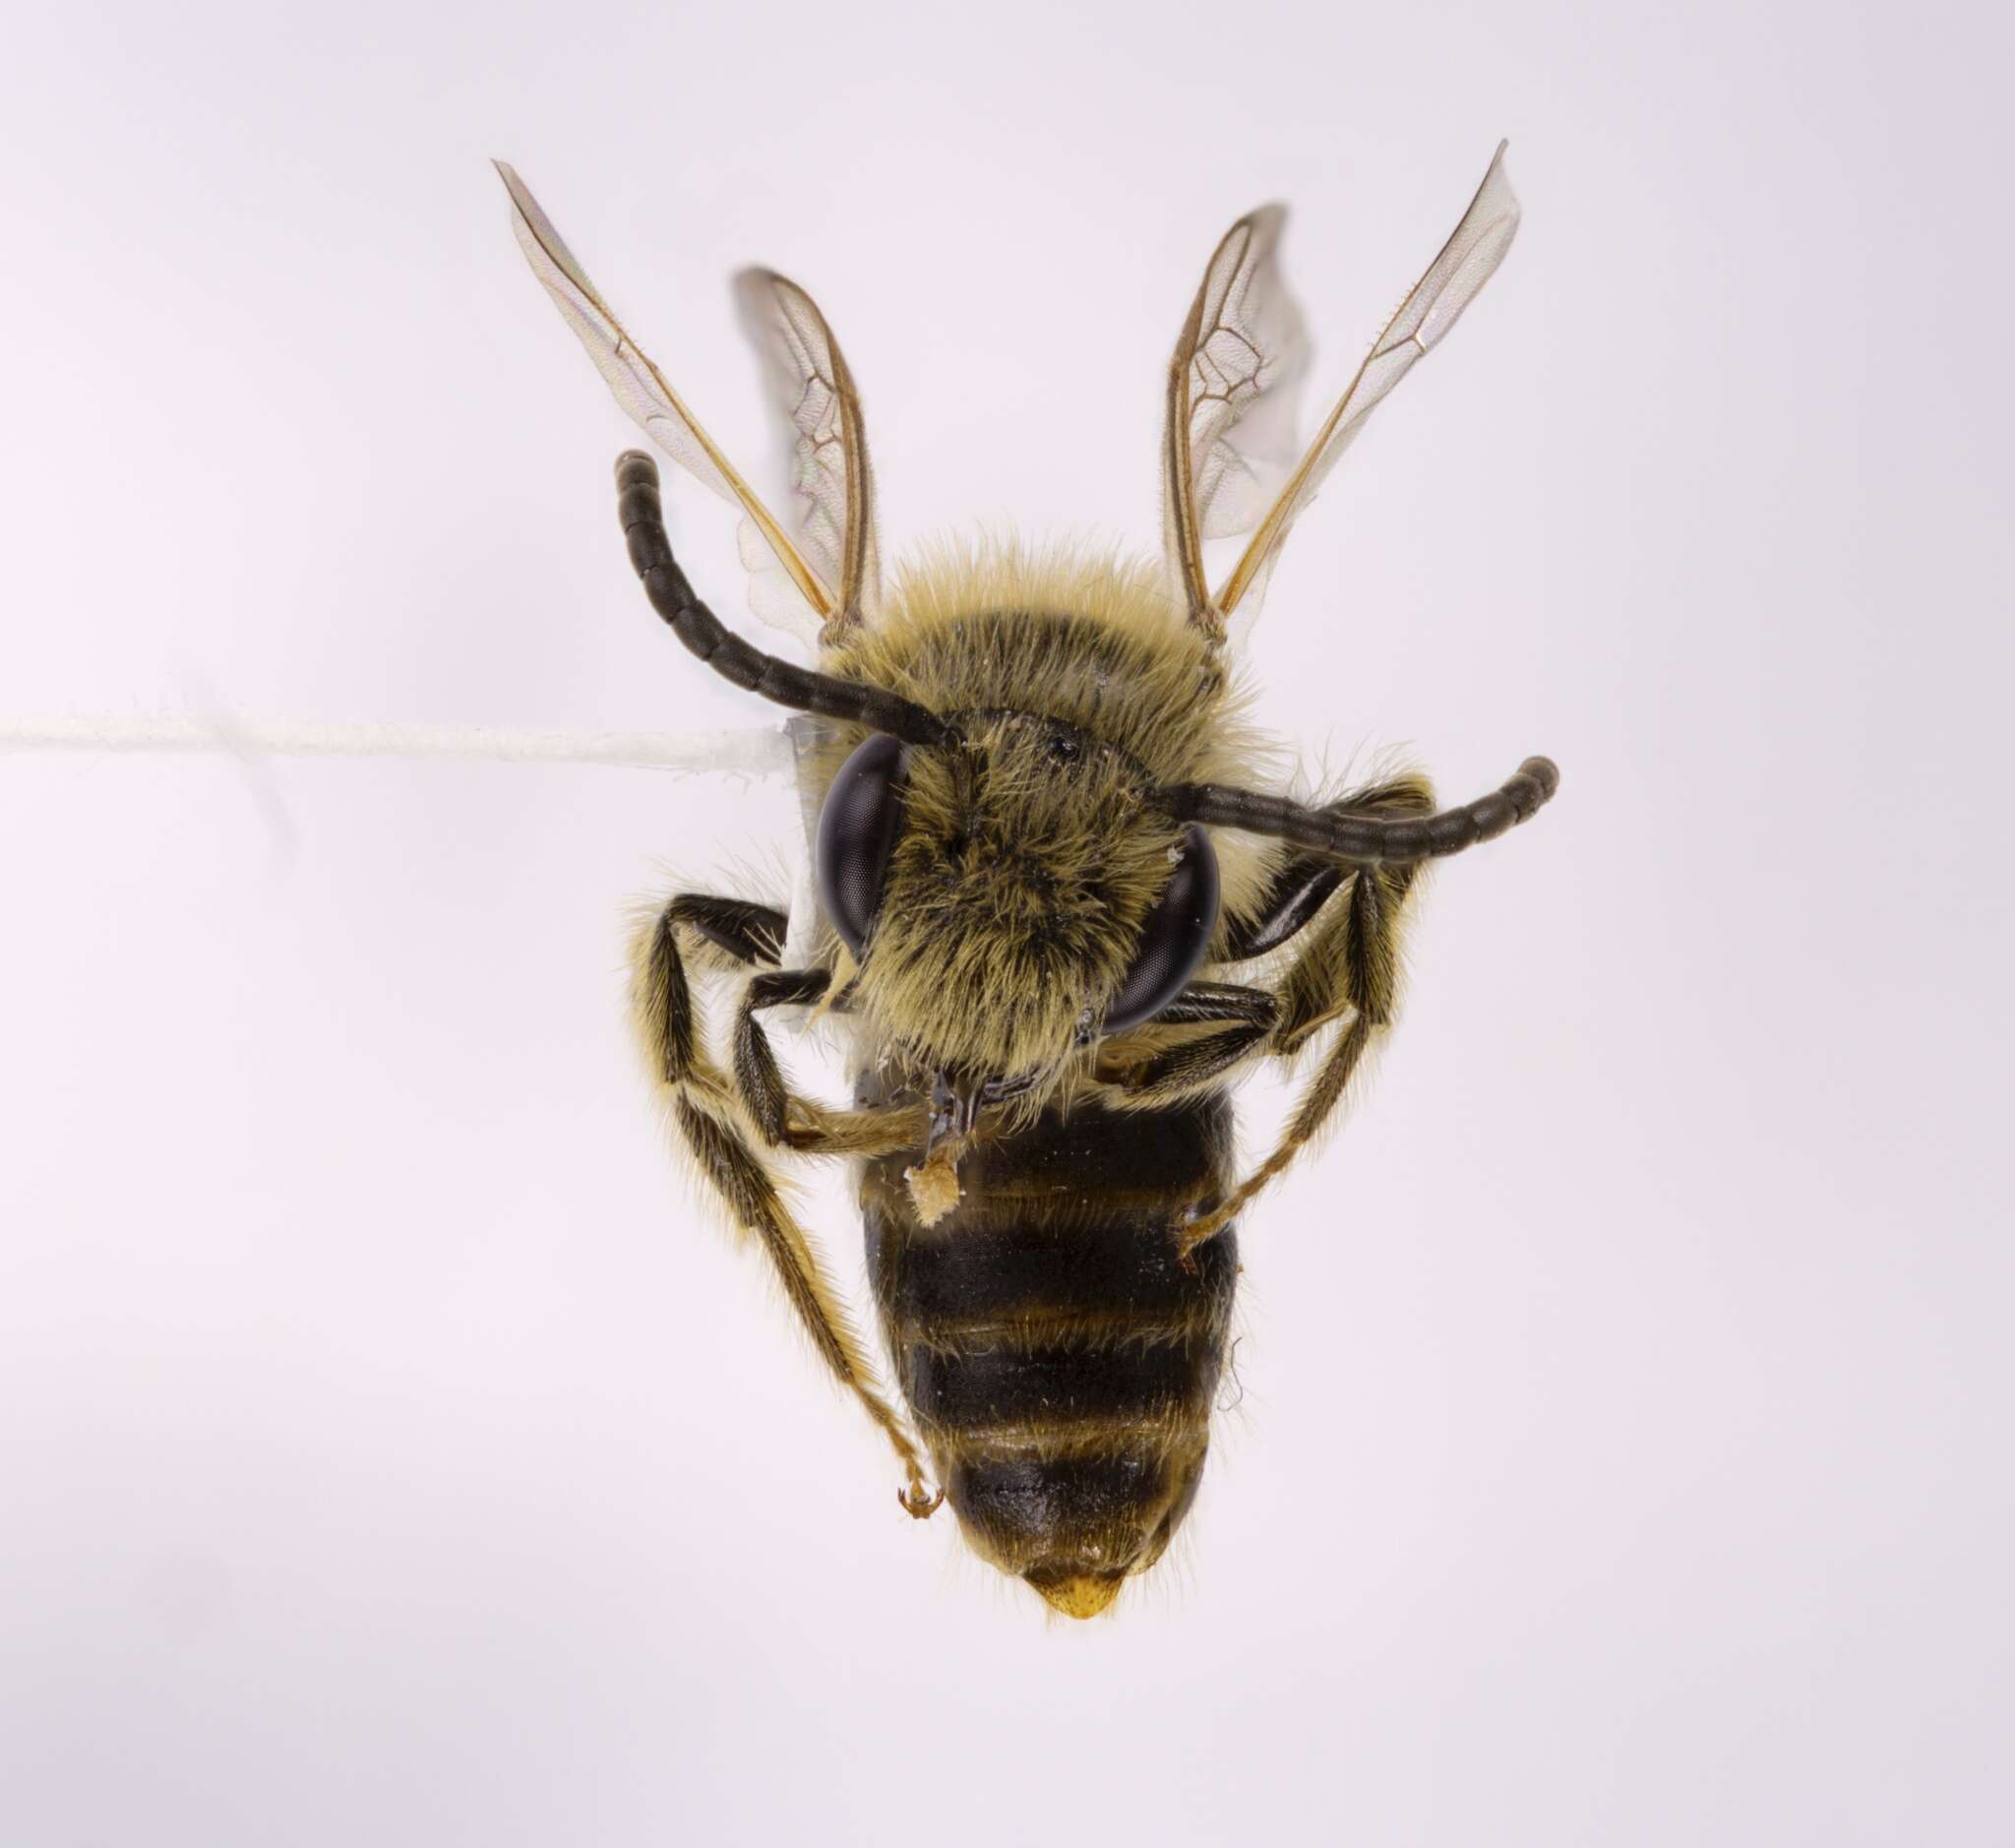 Sivun Andrena imitatrix Cresson 1872 kuva